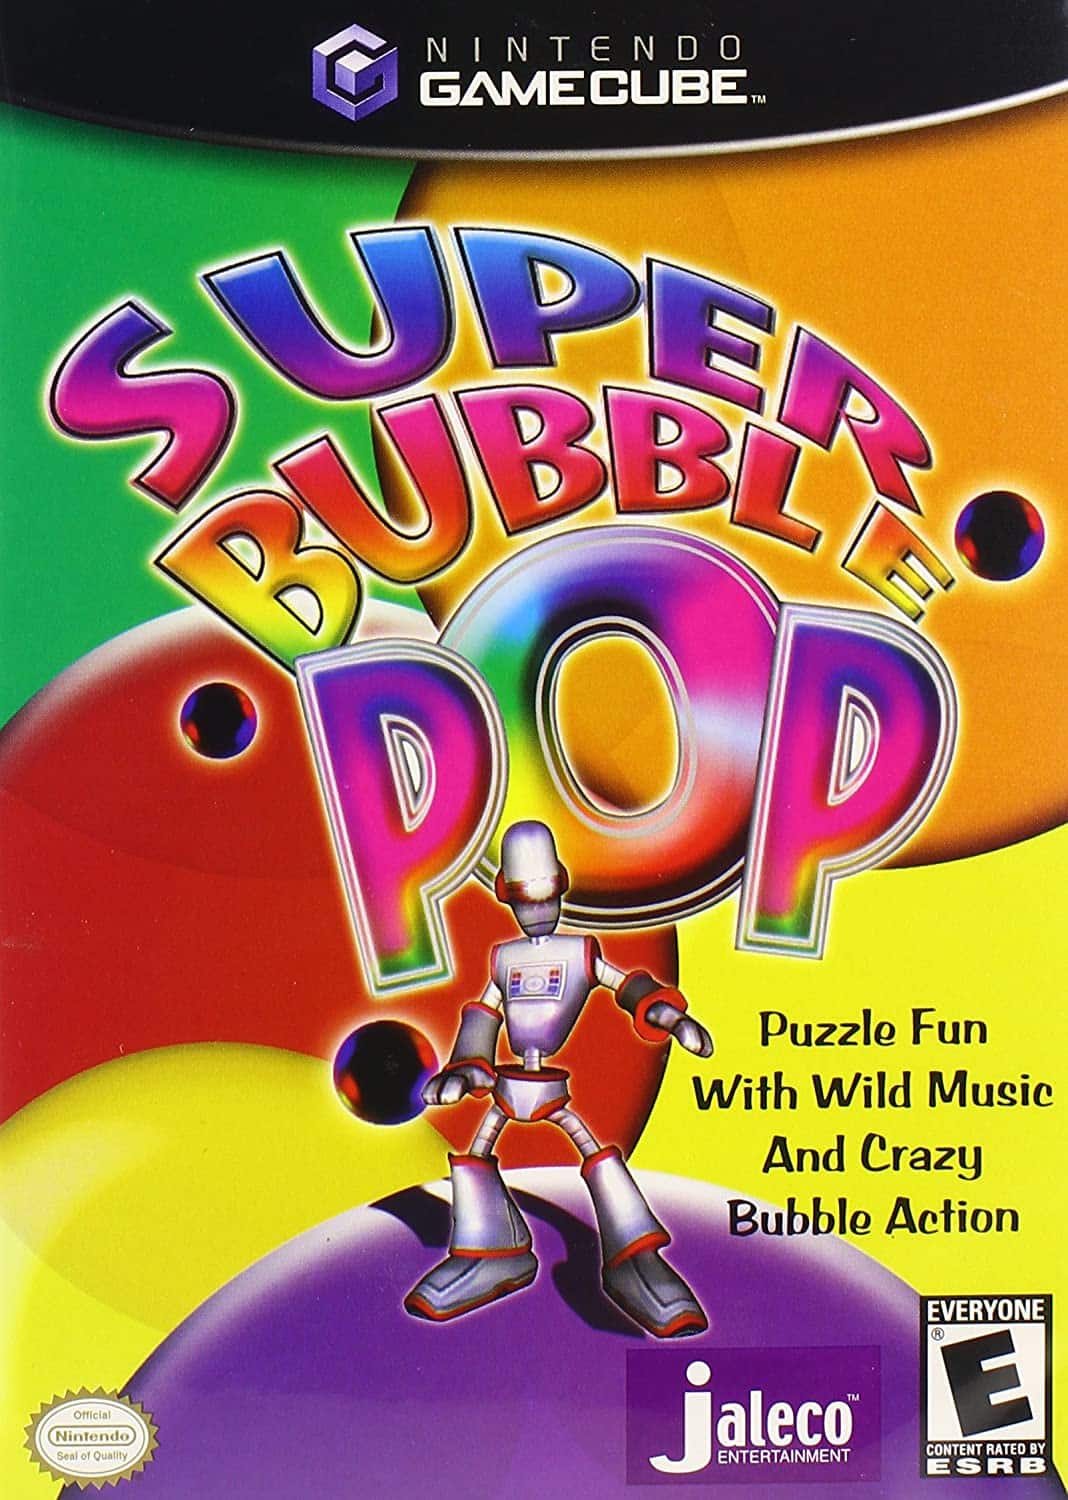 Super Bubble Pop player count stats